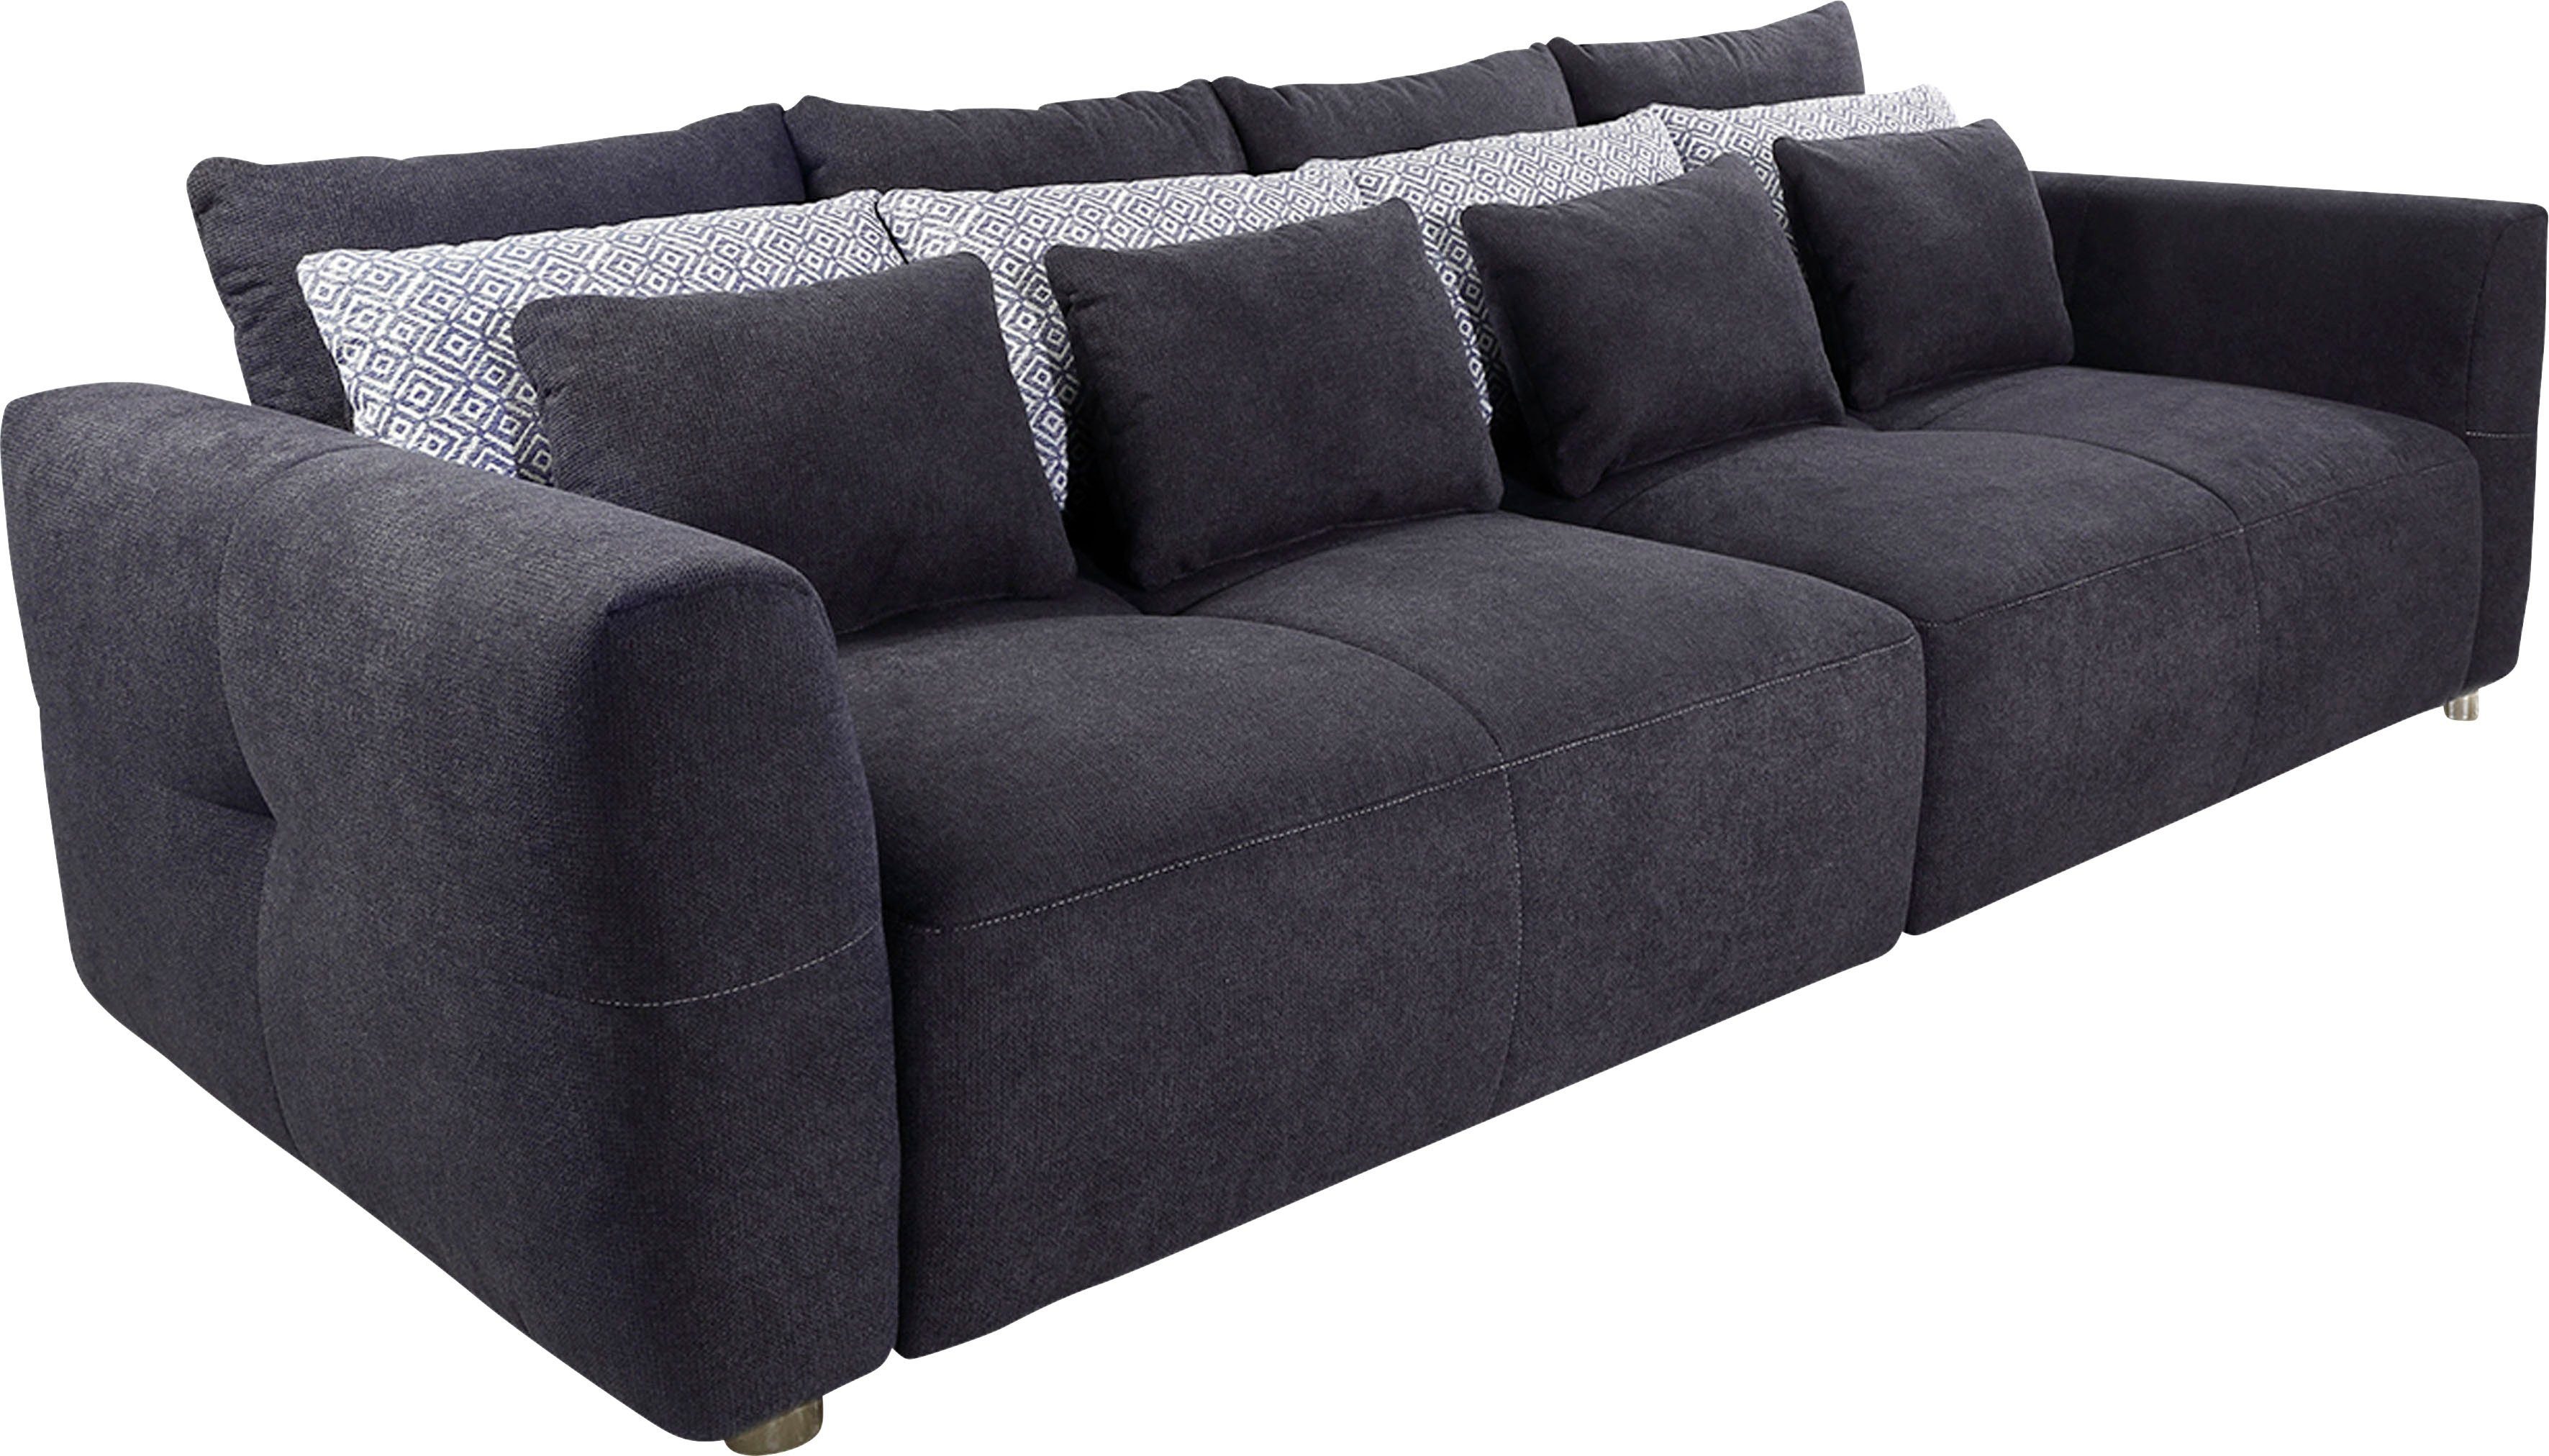 Jockenhöfer Gruppe Big-Sofa, mit Federkernpolsterung für kuscheligen,  angenehmen Sitzkomfort